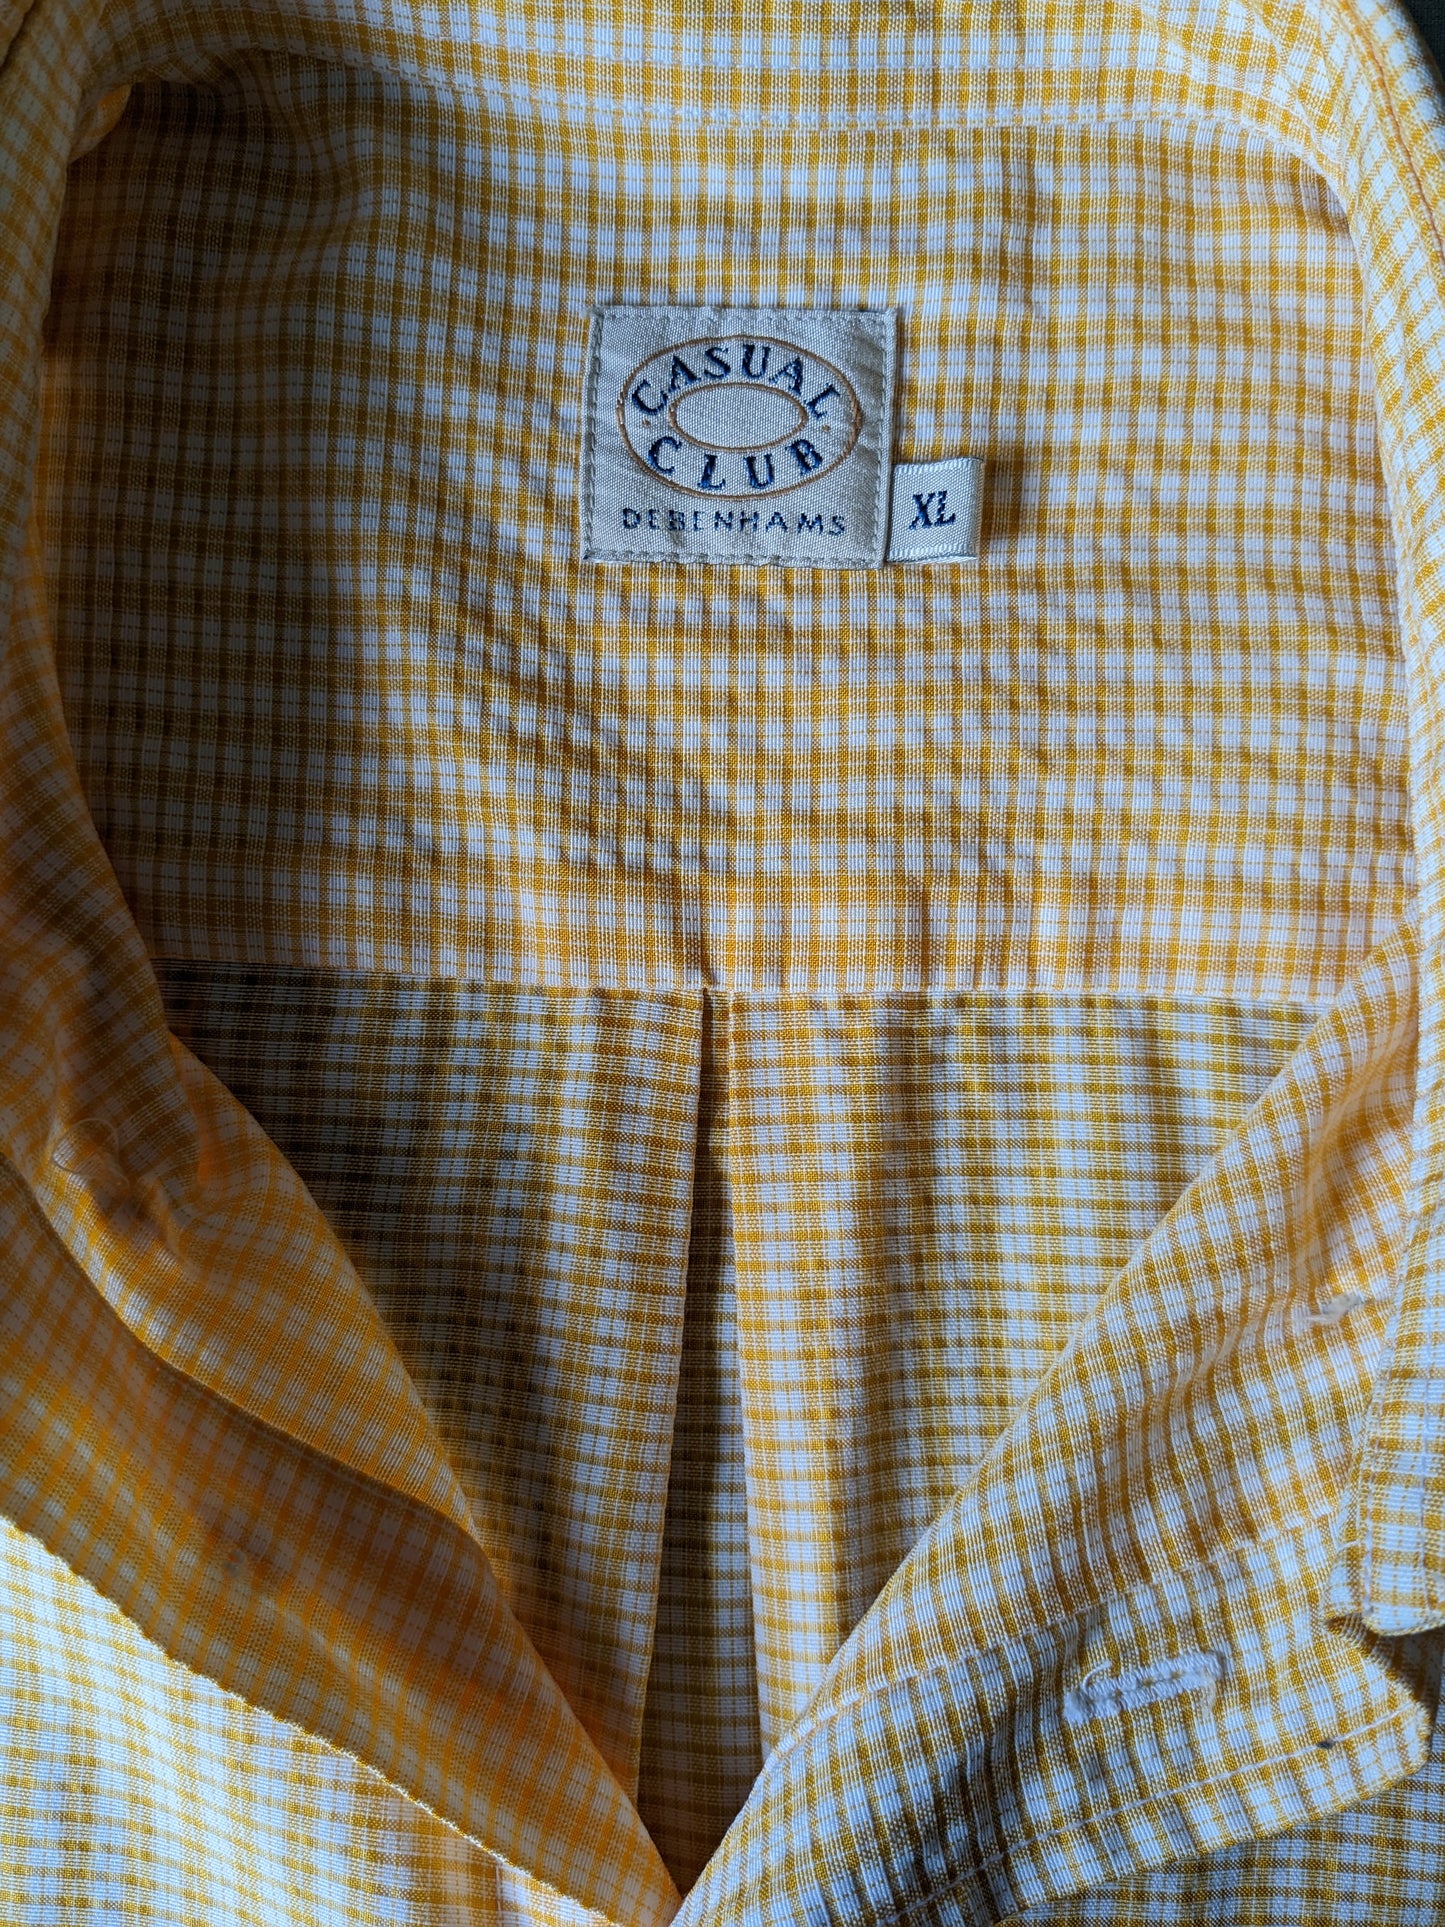 Chemise de club décontractée vintage à manches courtes. Motif beige orange. Taille xl / xxl-2xl.